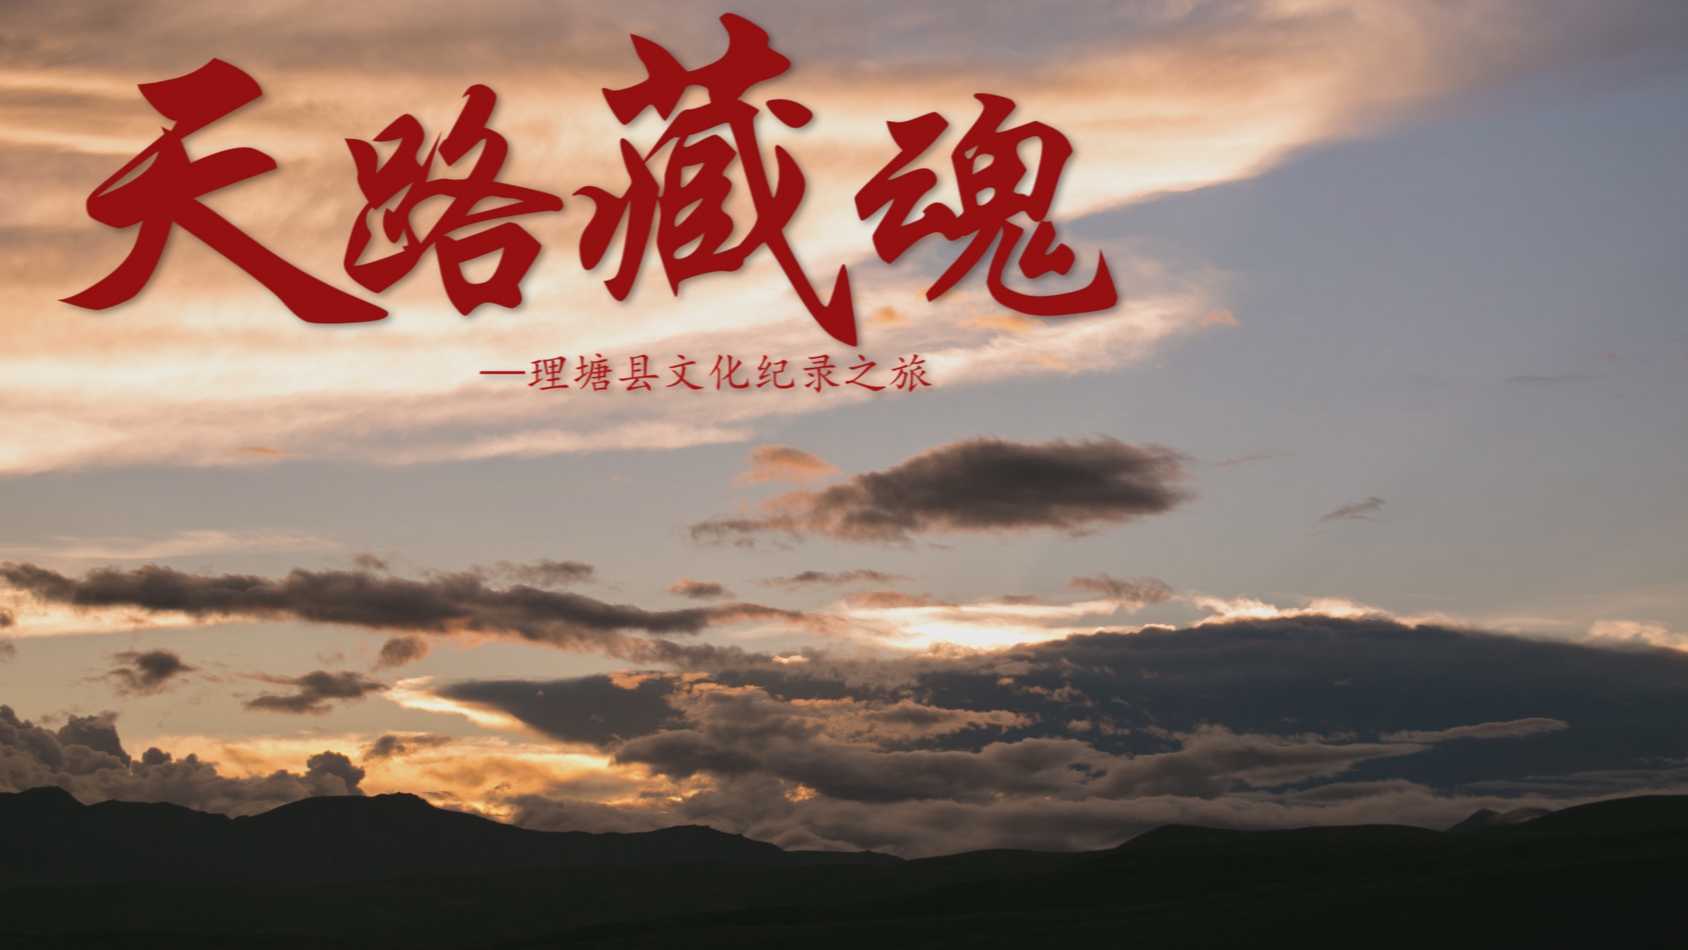 藏区纪录片《天路藏魂》